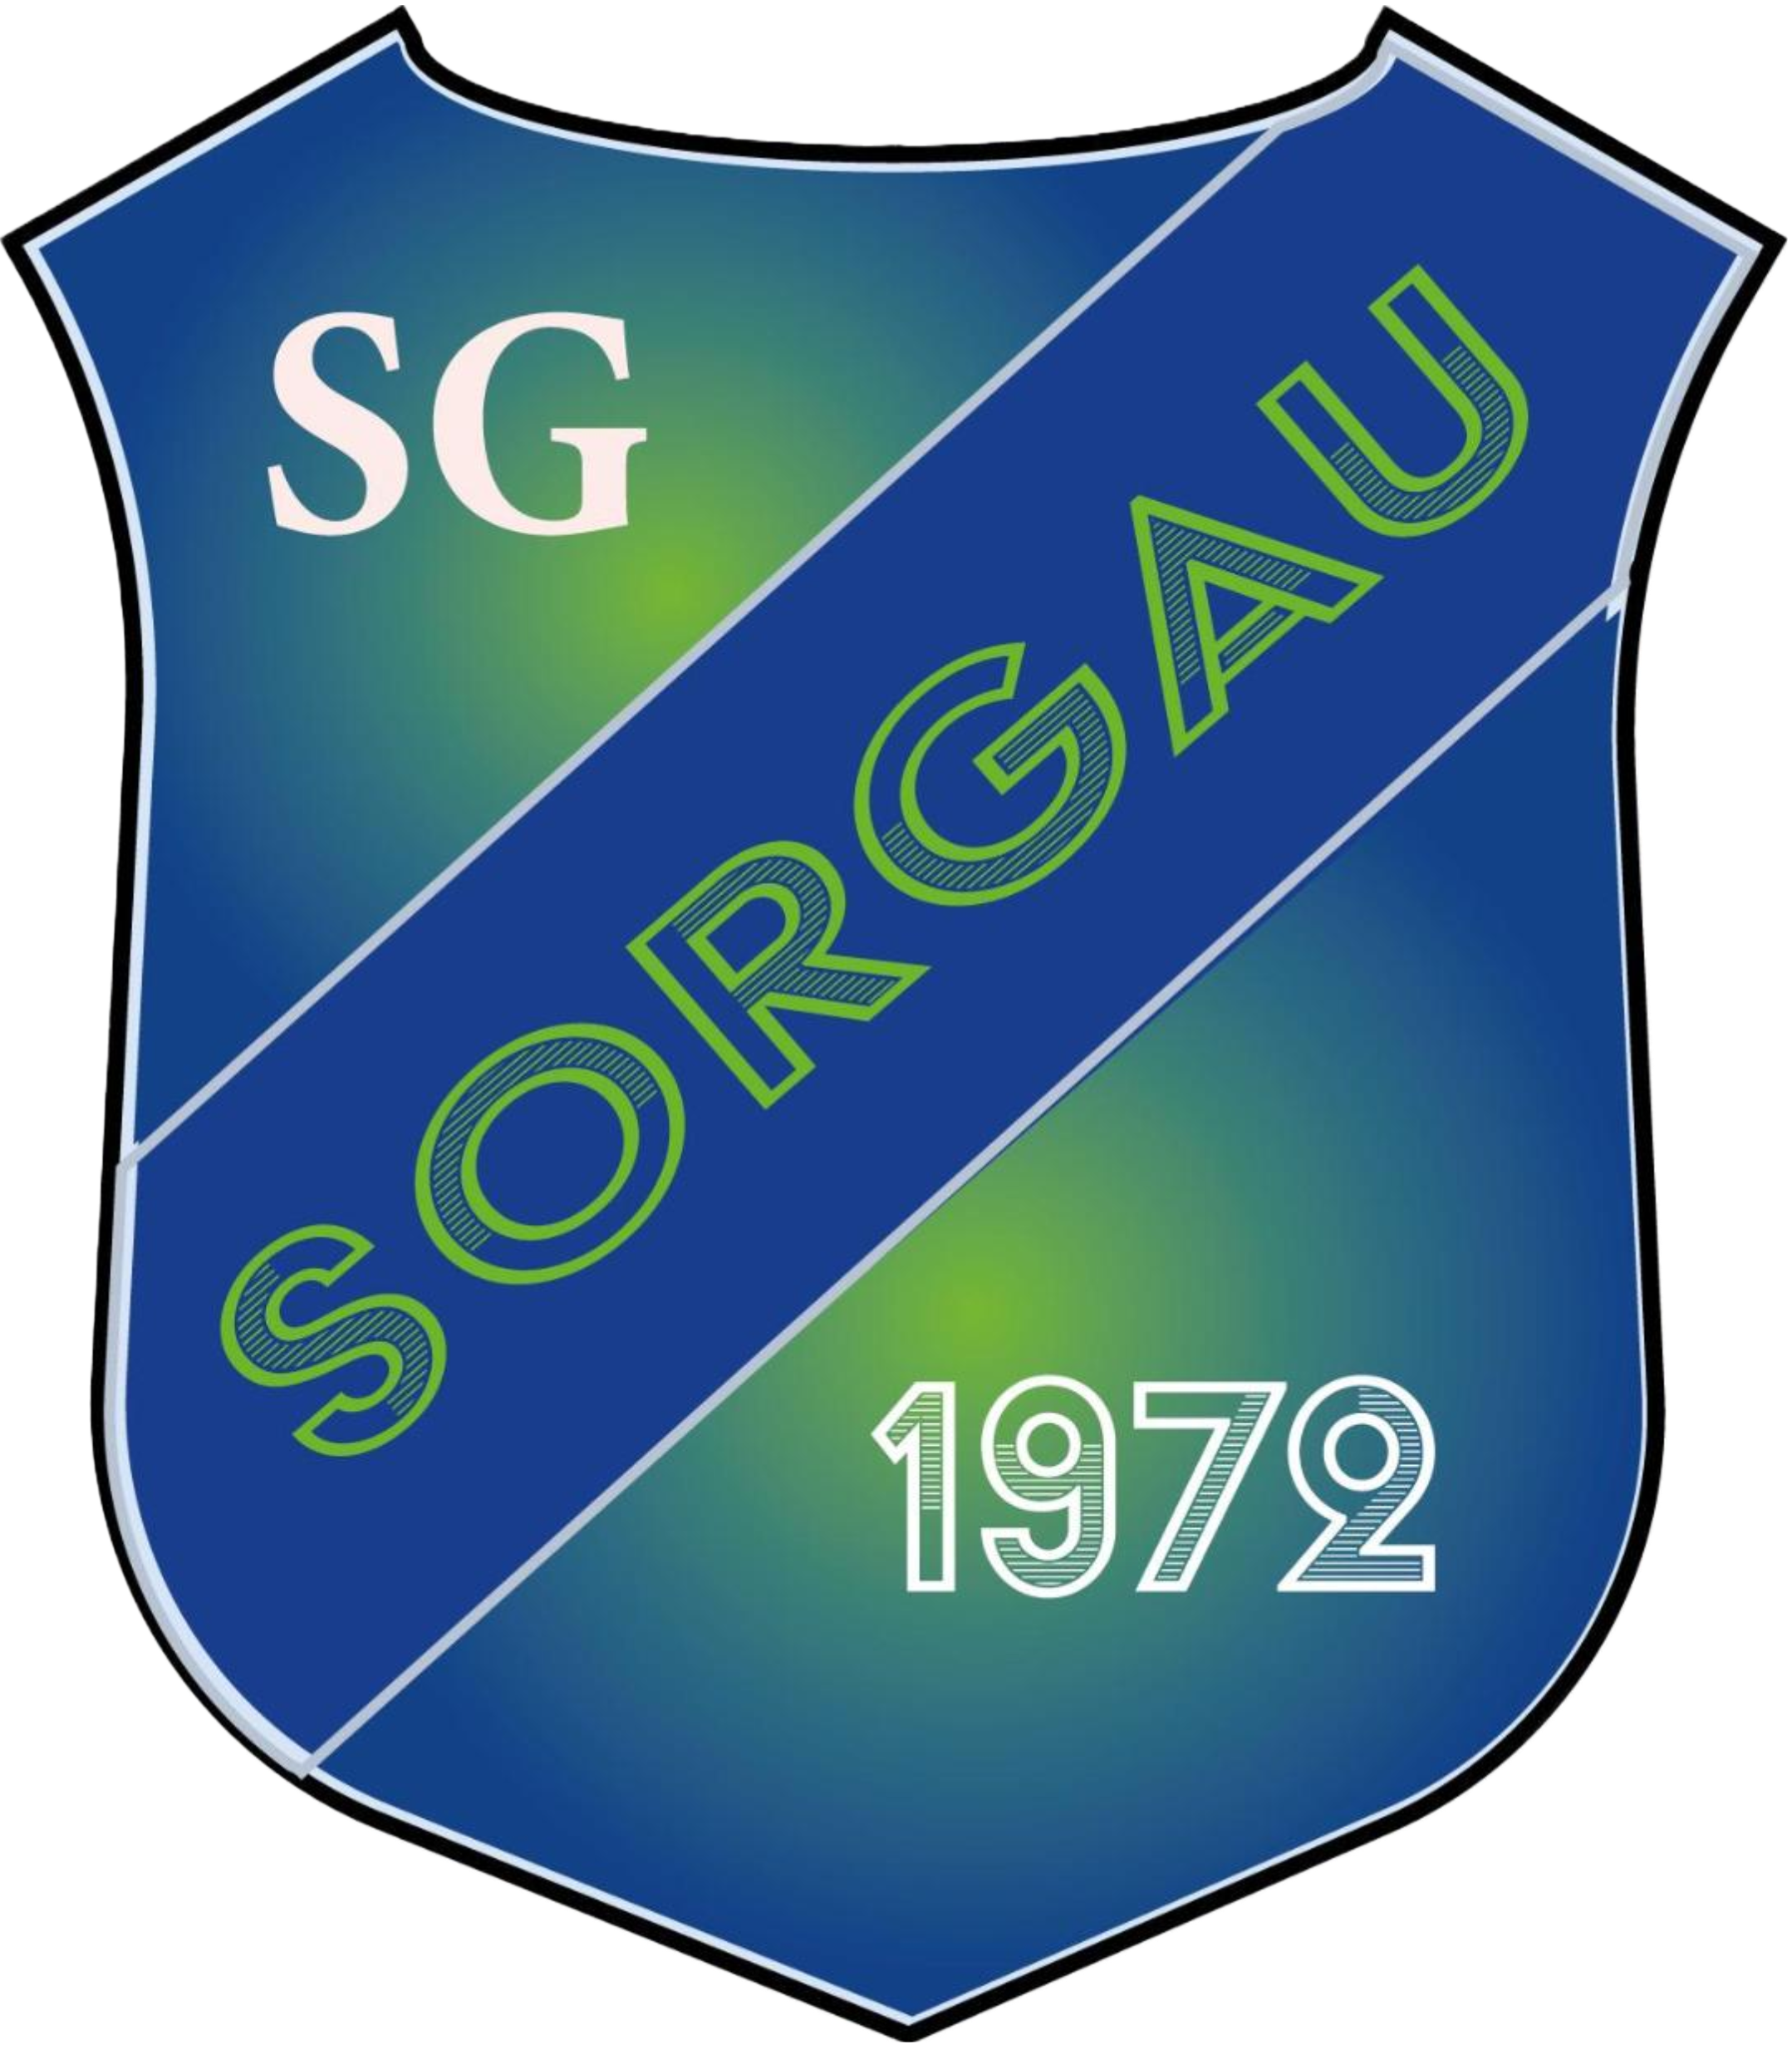 SG Sorgau – Tischtennis